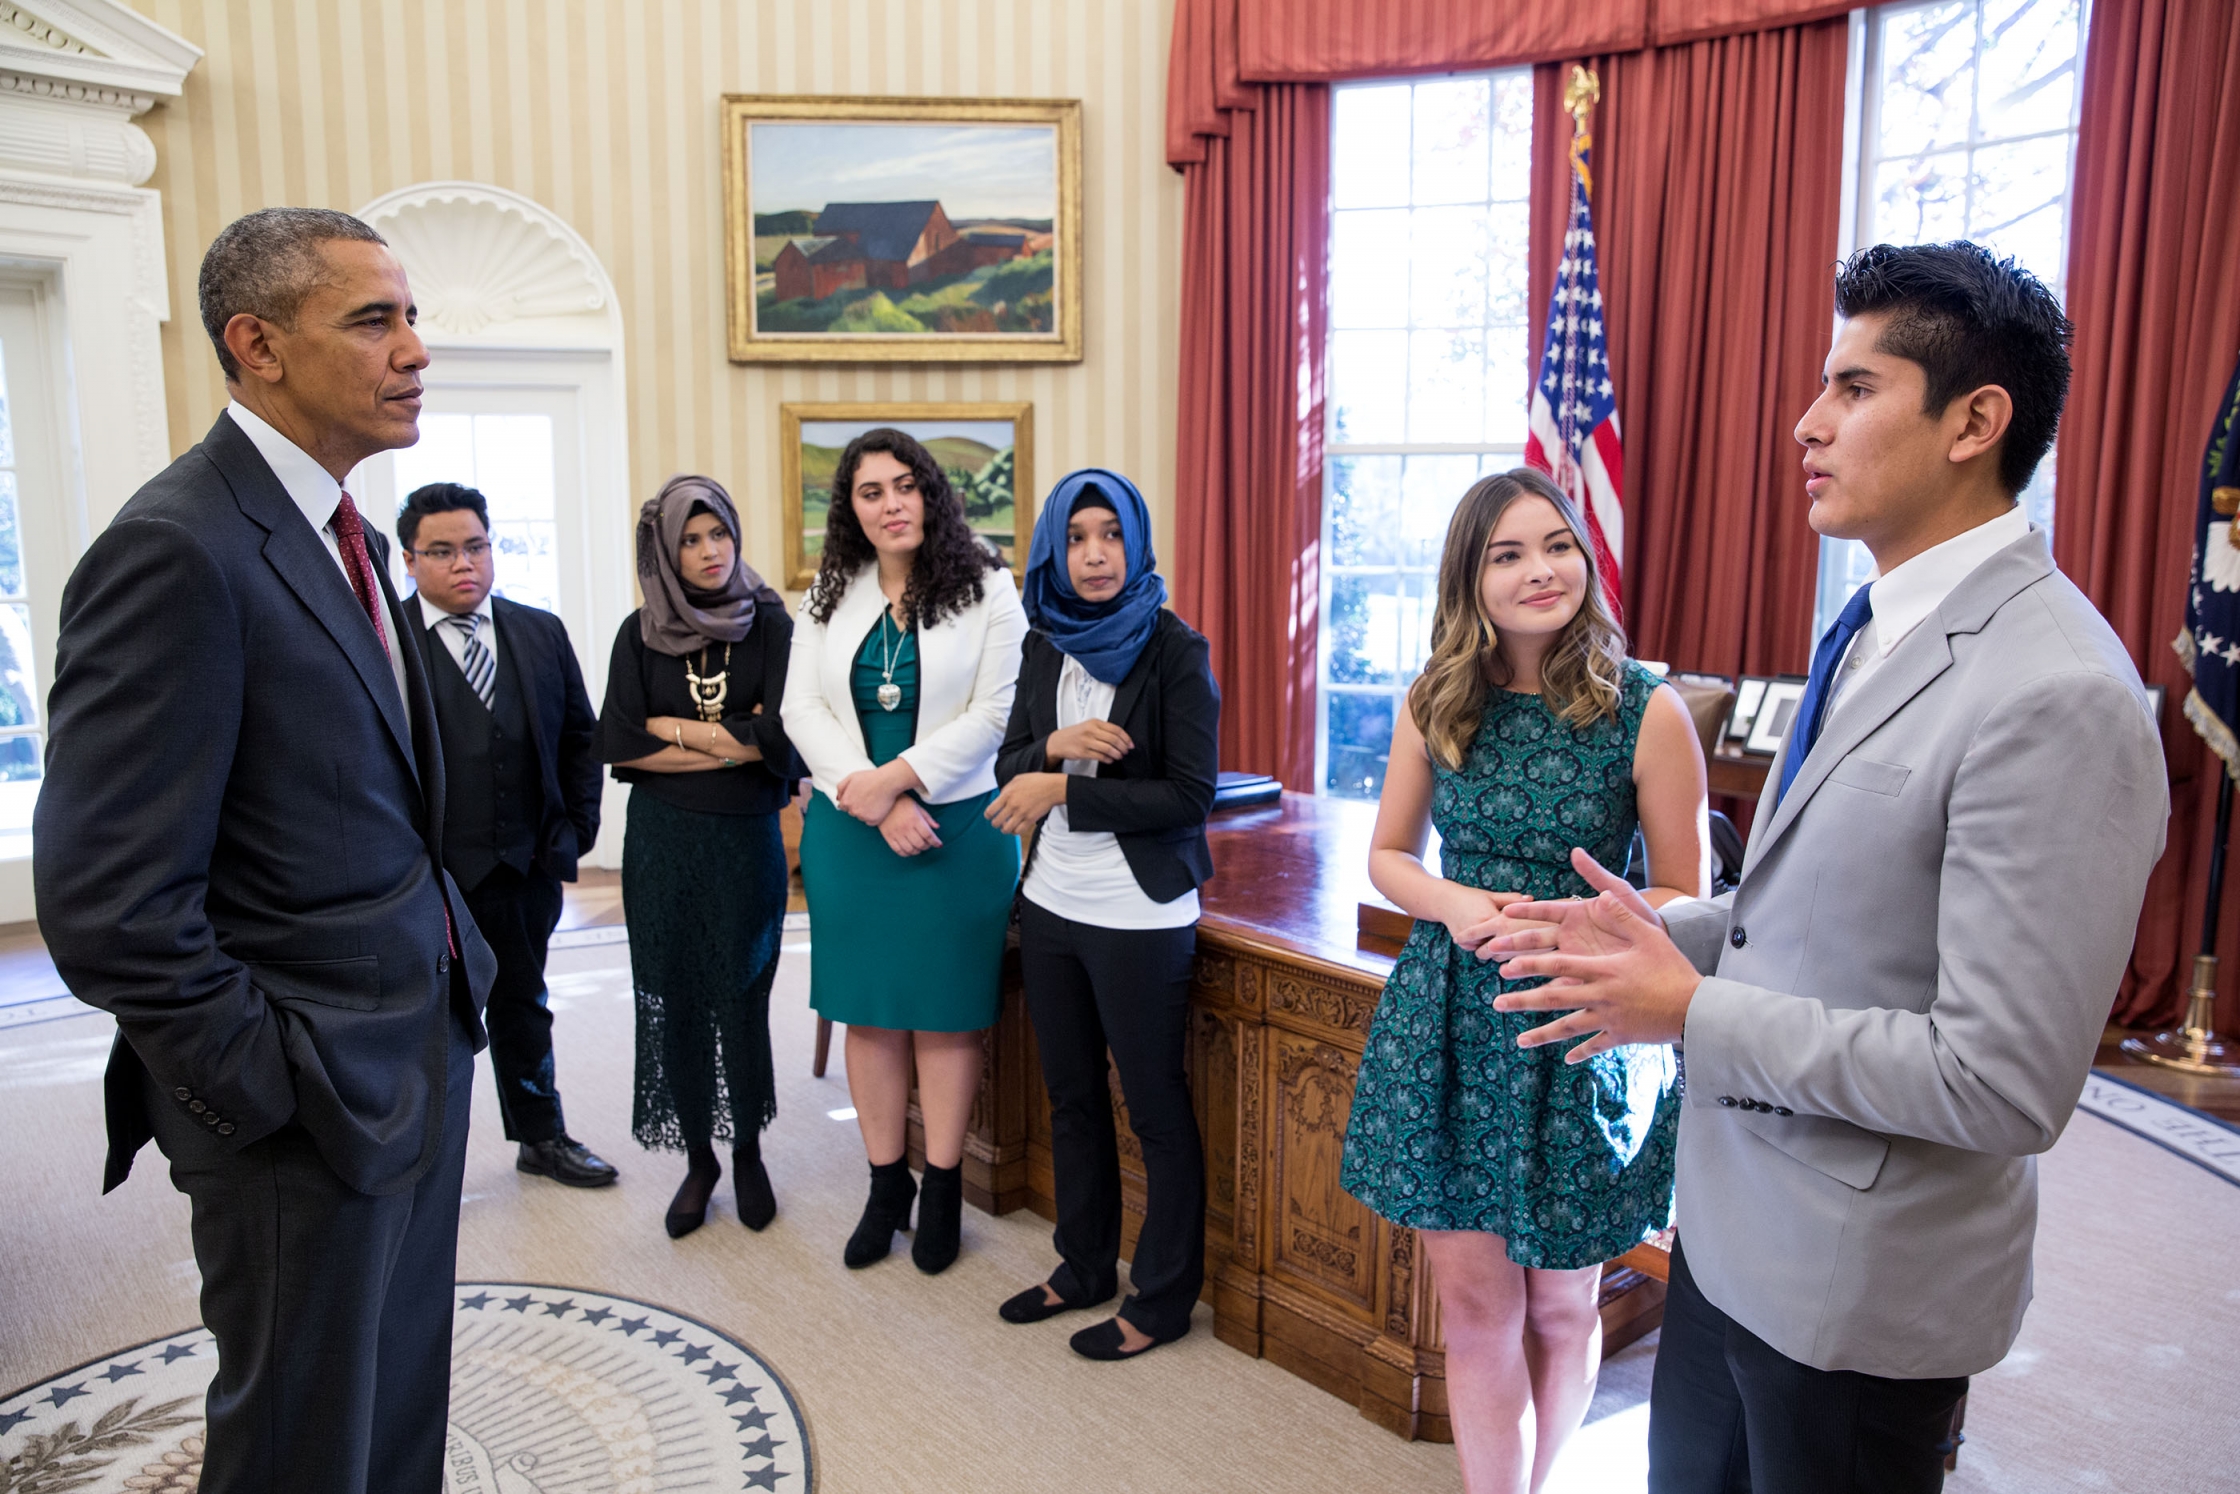  Después de la presidencia, Obama apoyará a jóvenes de minorías